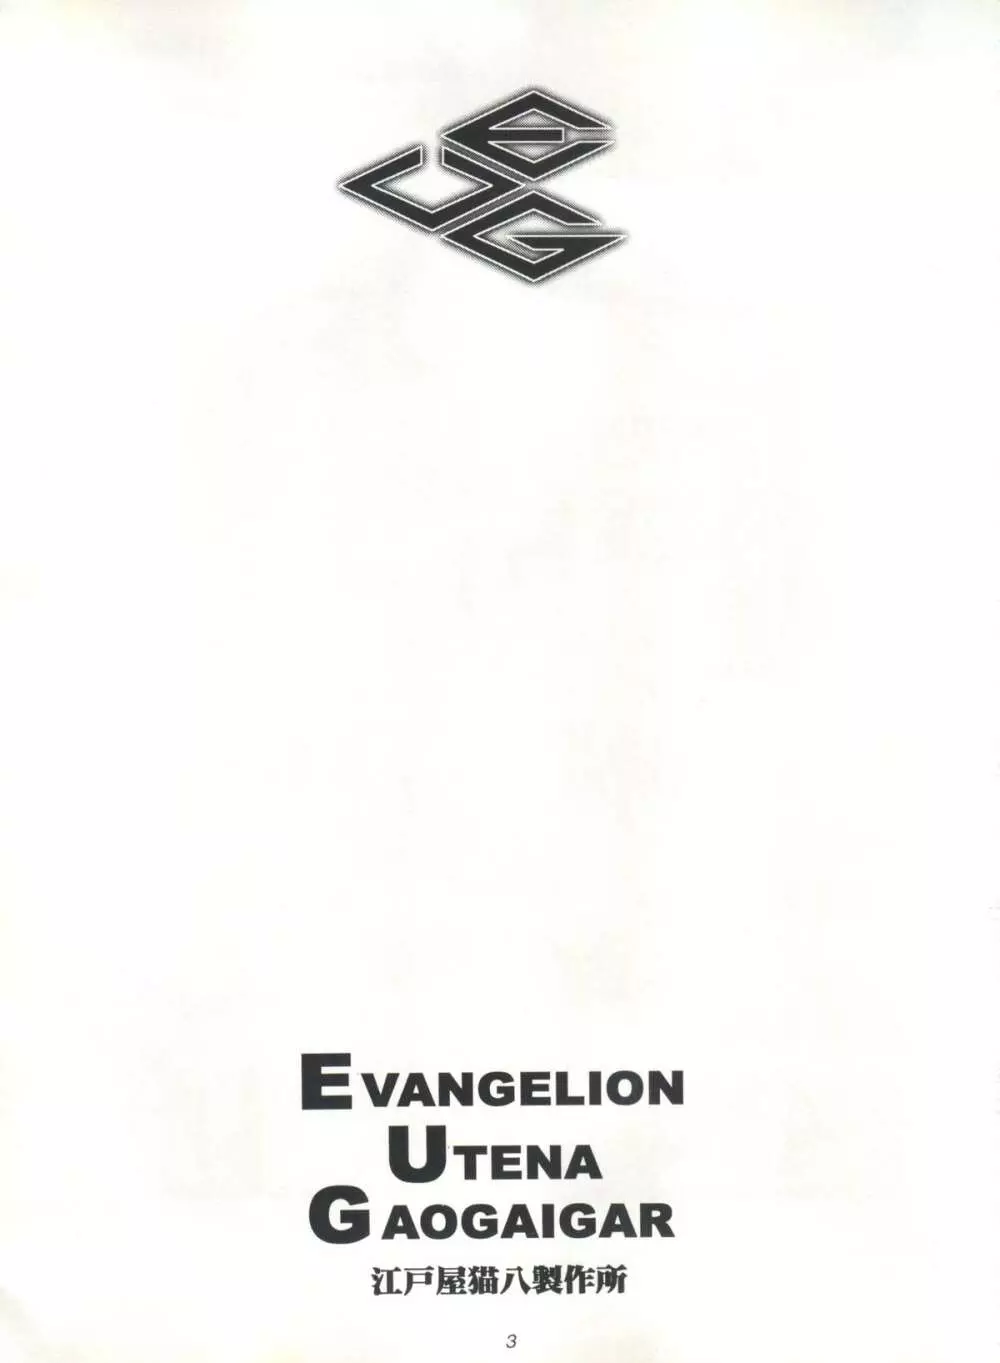 EUG EVANGELION UTENA GAOGAIGAR - page2